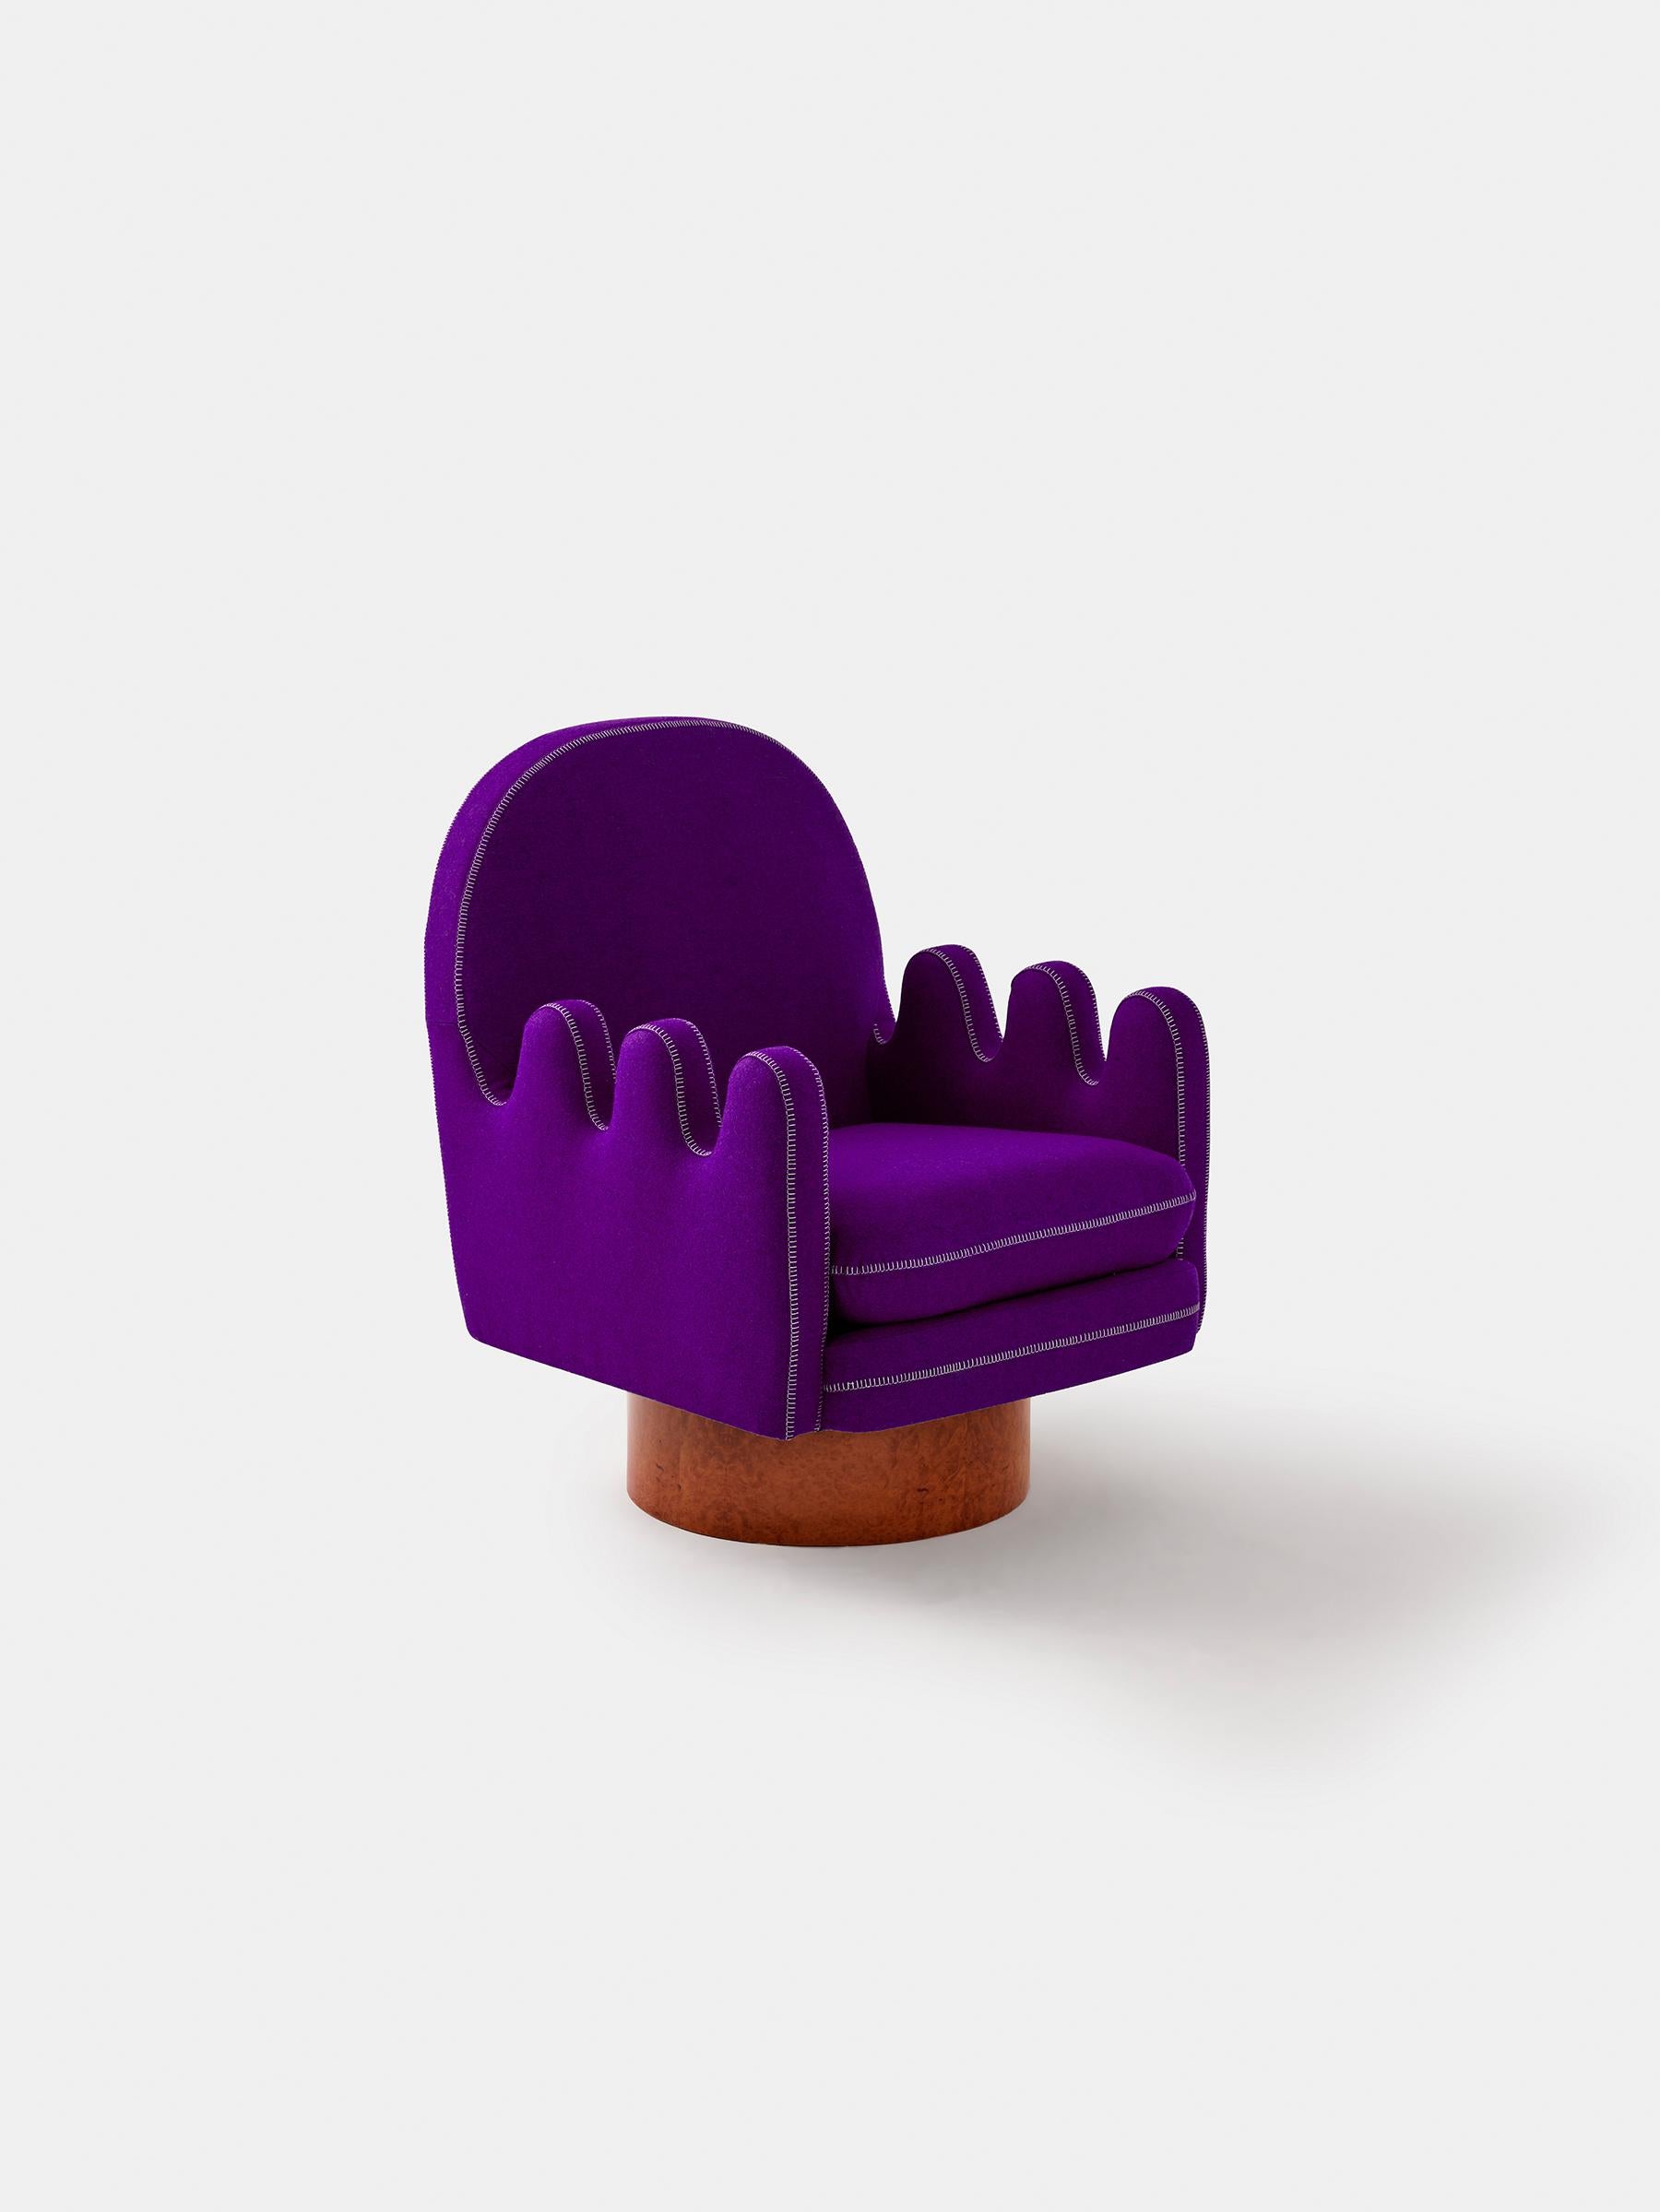 galerkin furniture thinking chair